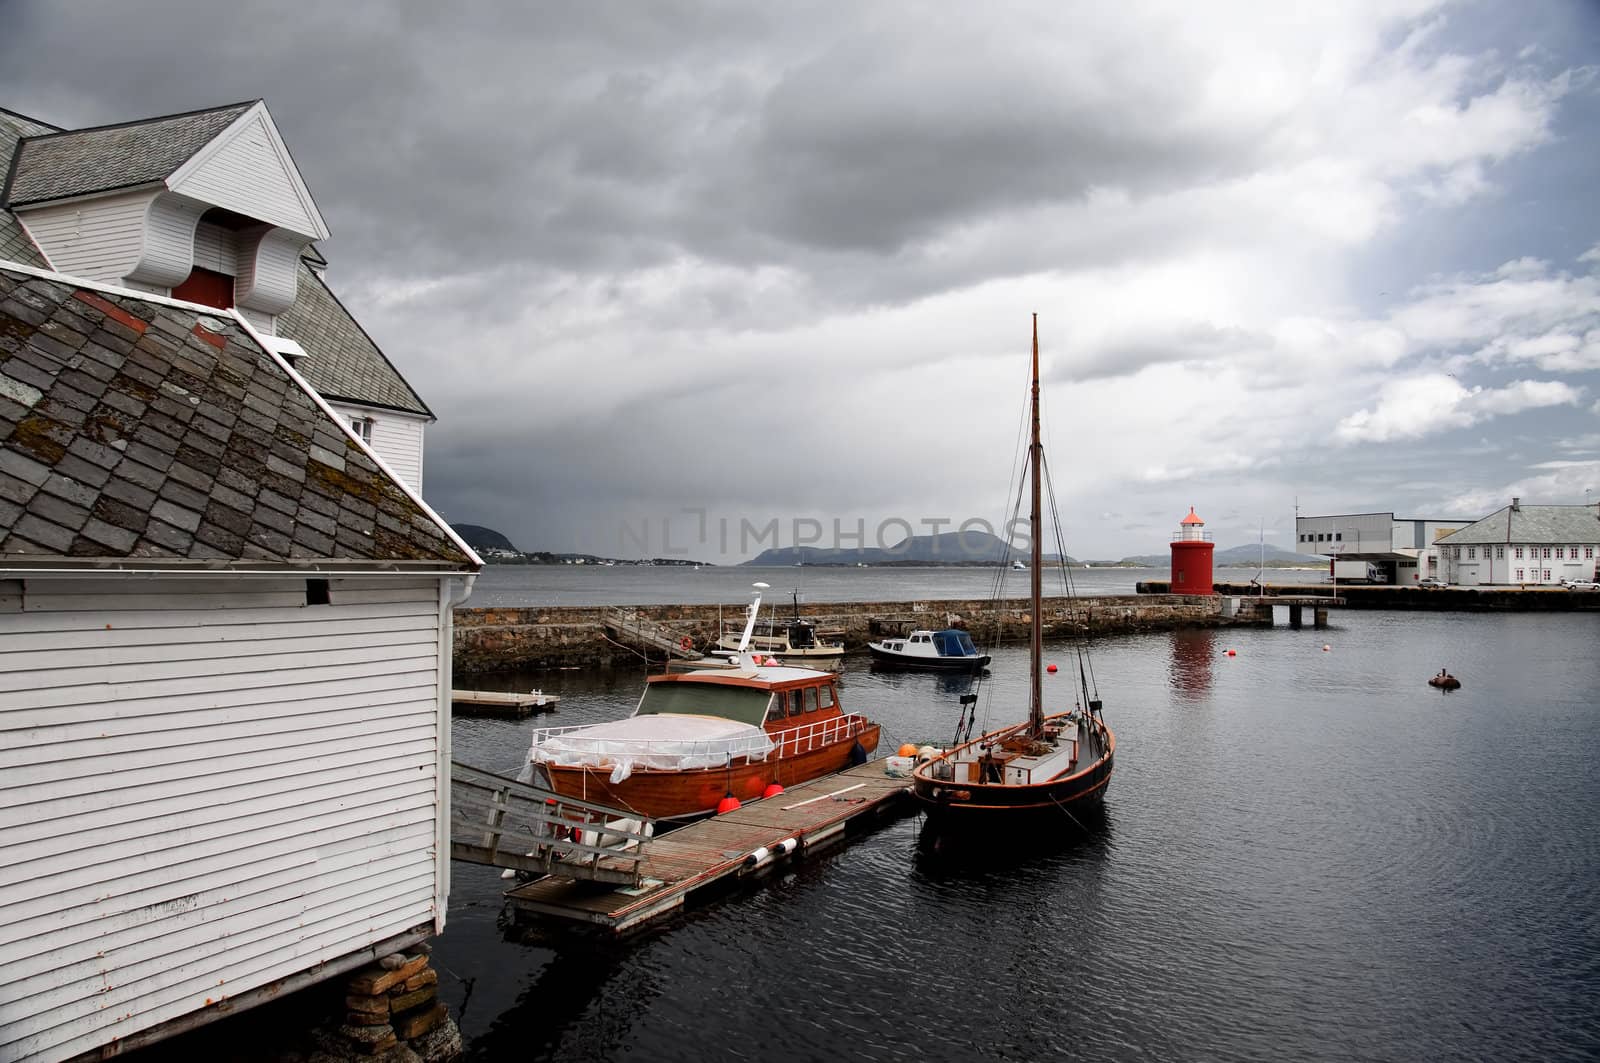 Aalesund harbour, Norway by GryT